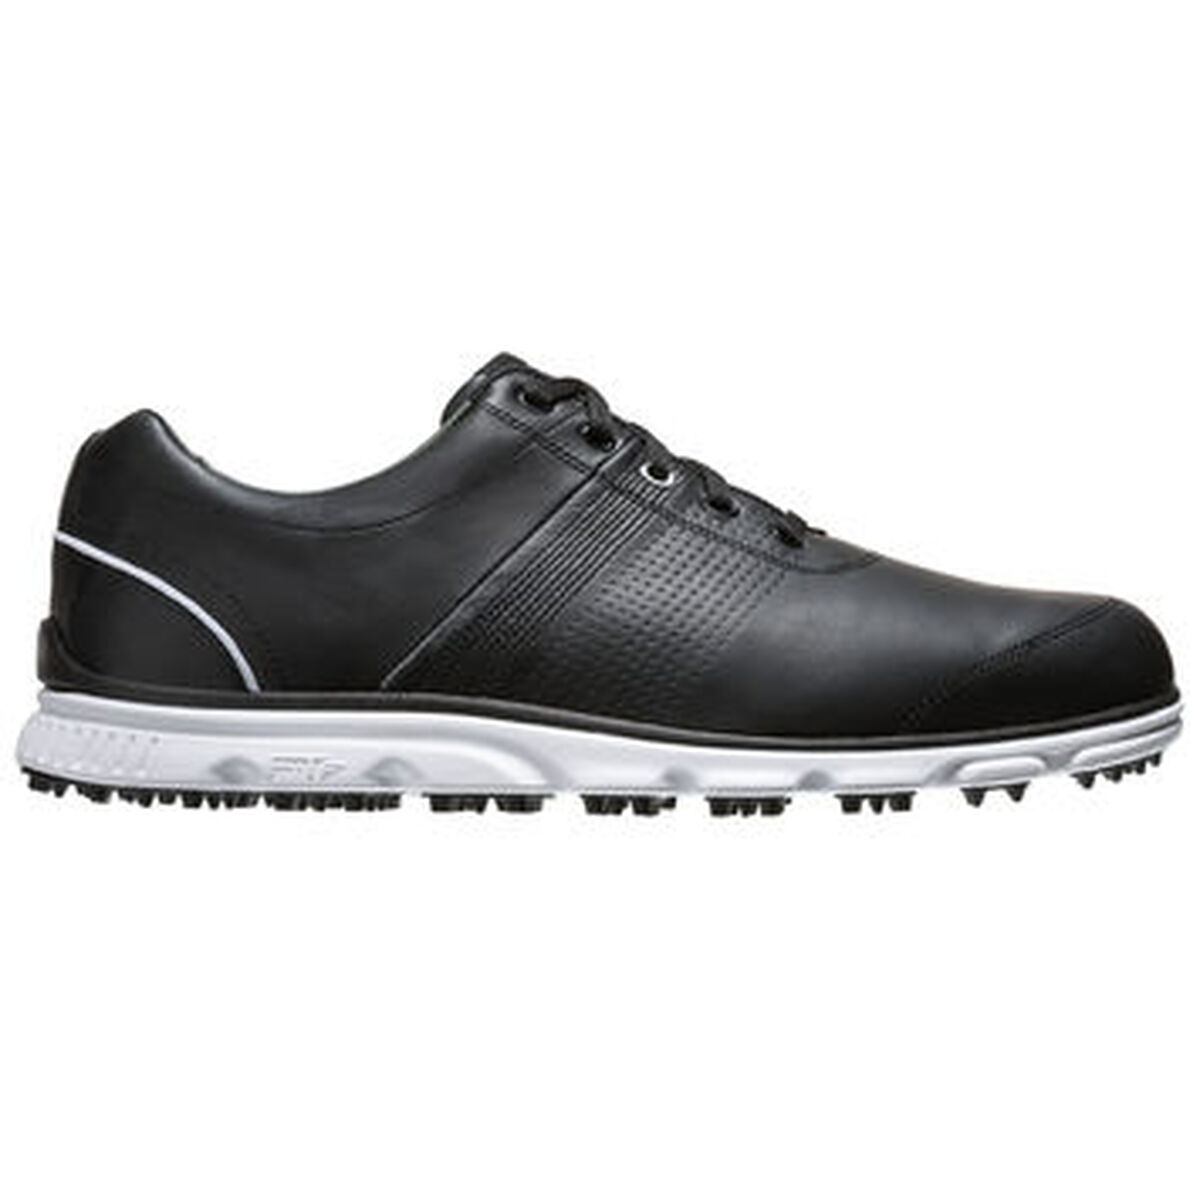 FootJoy DryJoy Tour Casual Men's Golf Shoe - Black/White | PGA TOUR ...